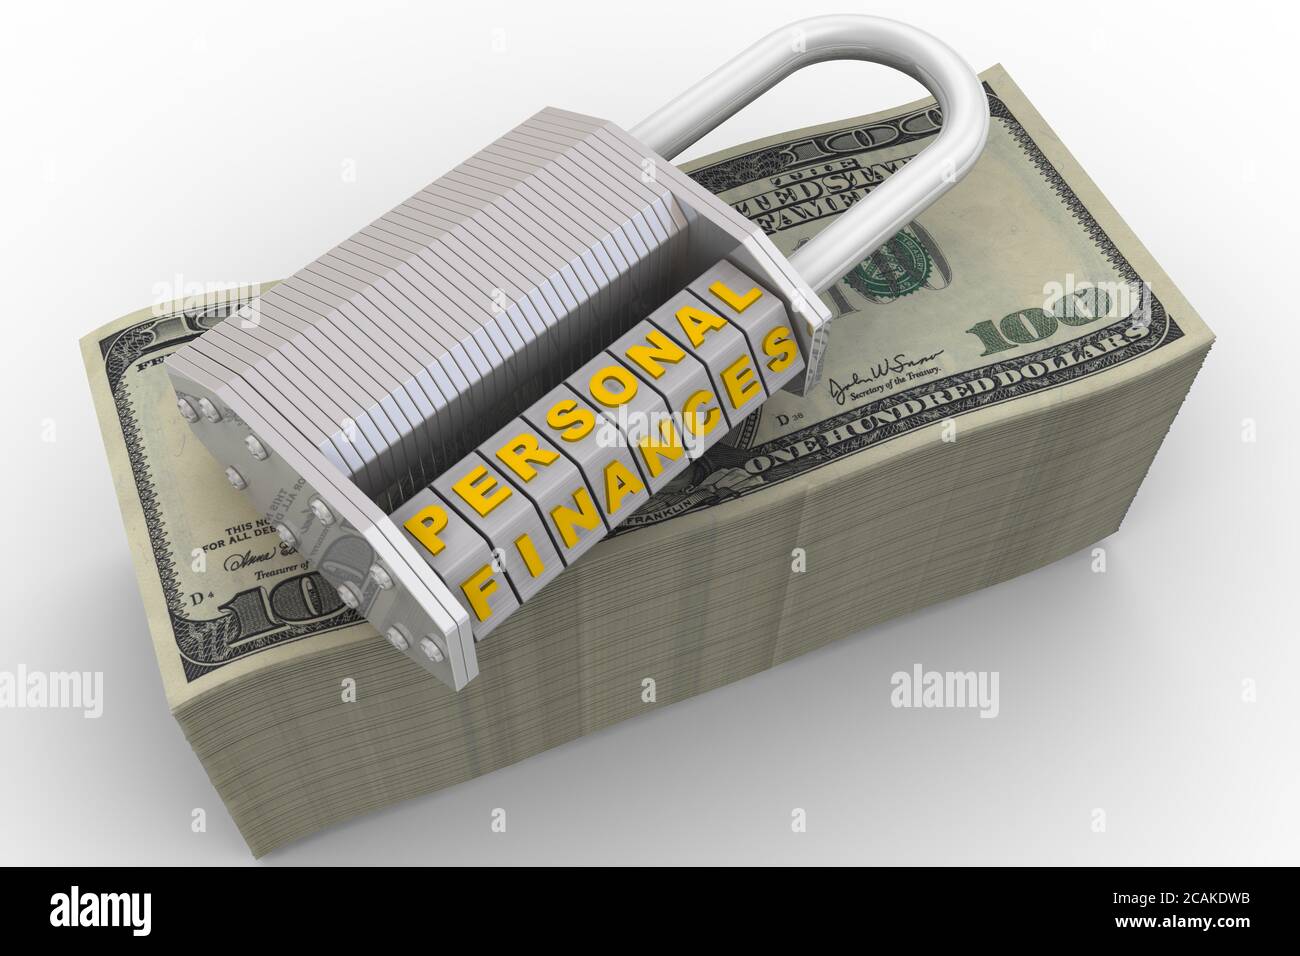 Persönliche Finanzen sind geschützt. Kombinationsschloss (wordlock) mit Buchstaben PERSÖNLICHE FINANZEN auf einer Packung US-Banknoten. 3D-Illustration Stockfoto